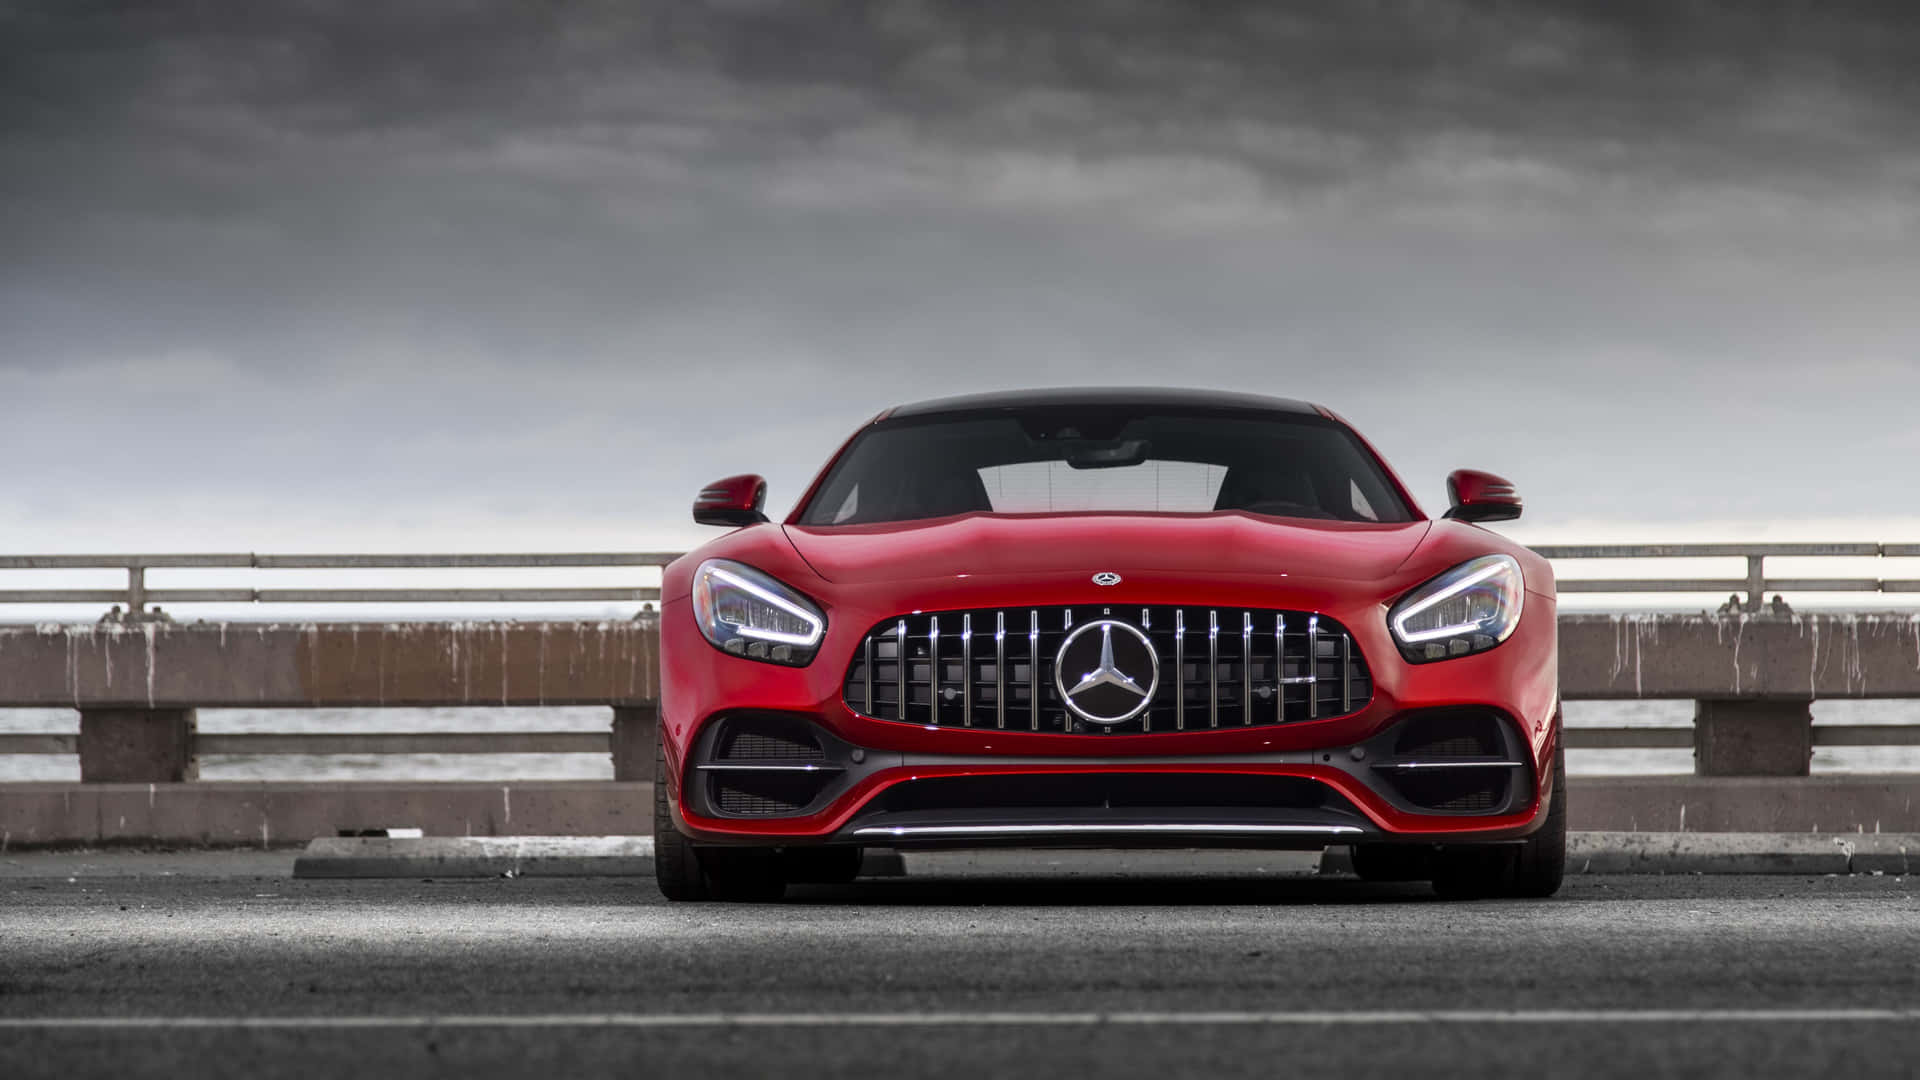 Sleek Mercedes-Benz Car in Stunning 4K Resolution